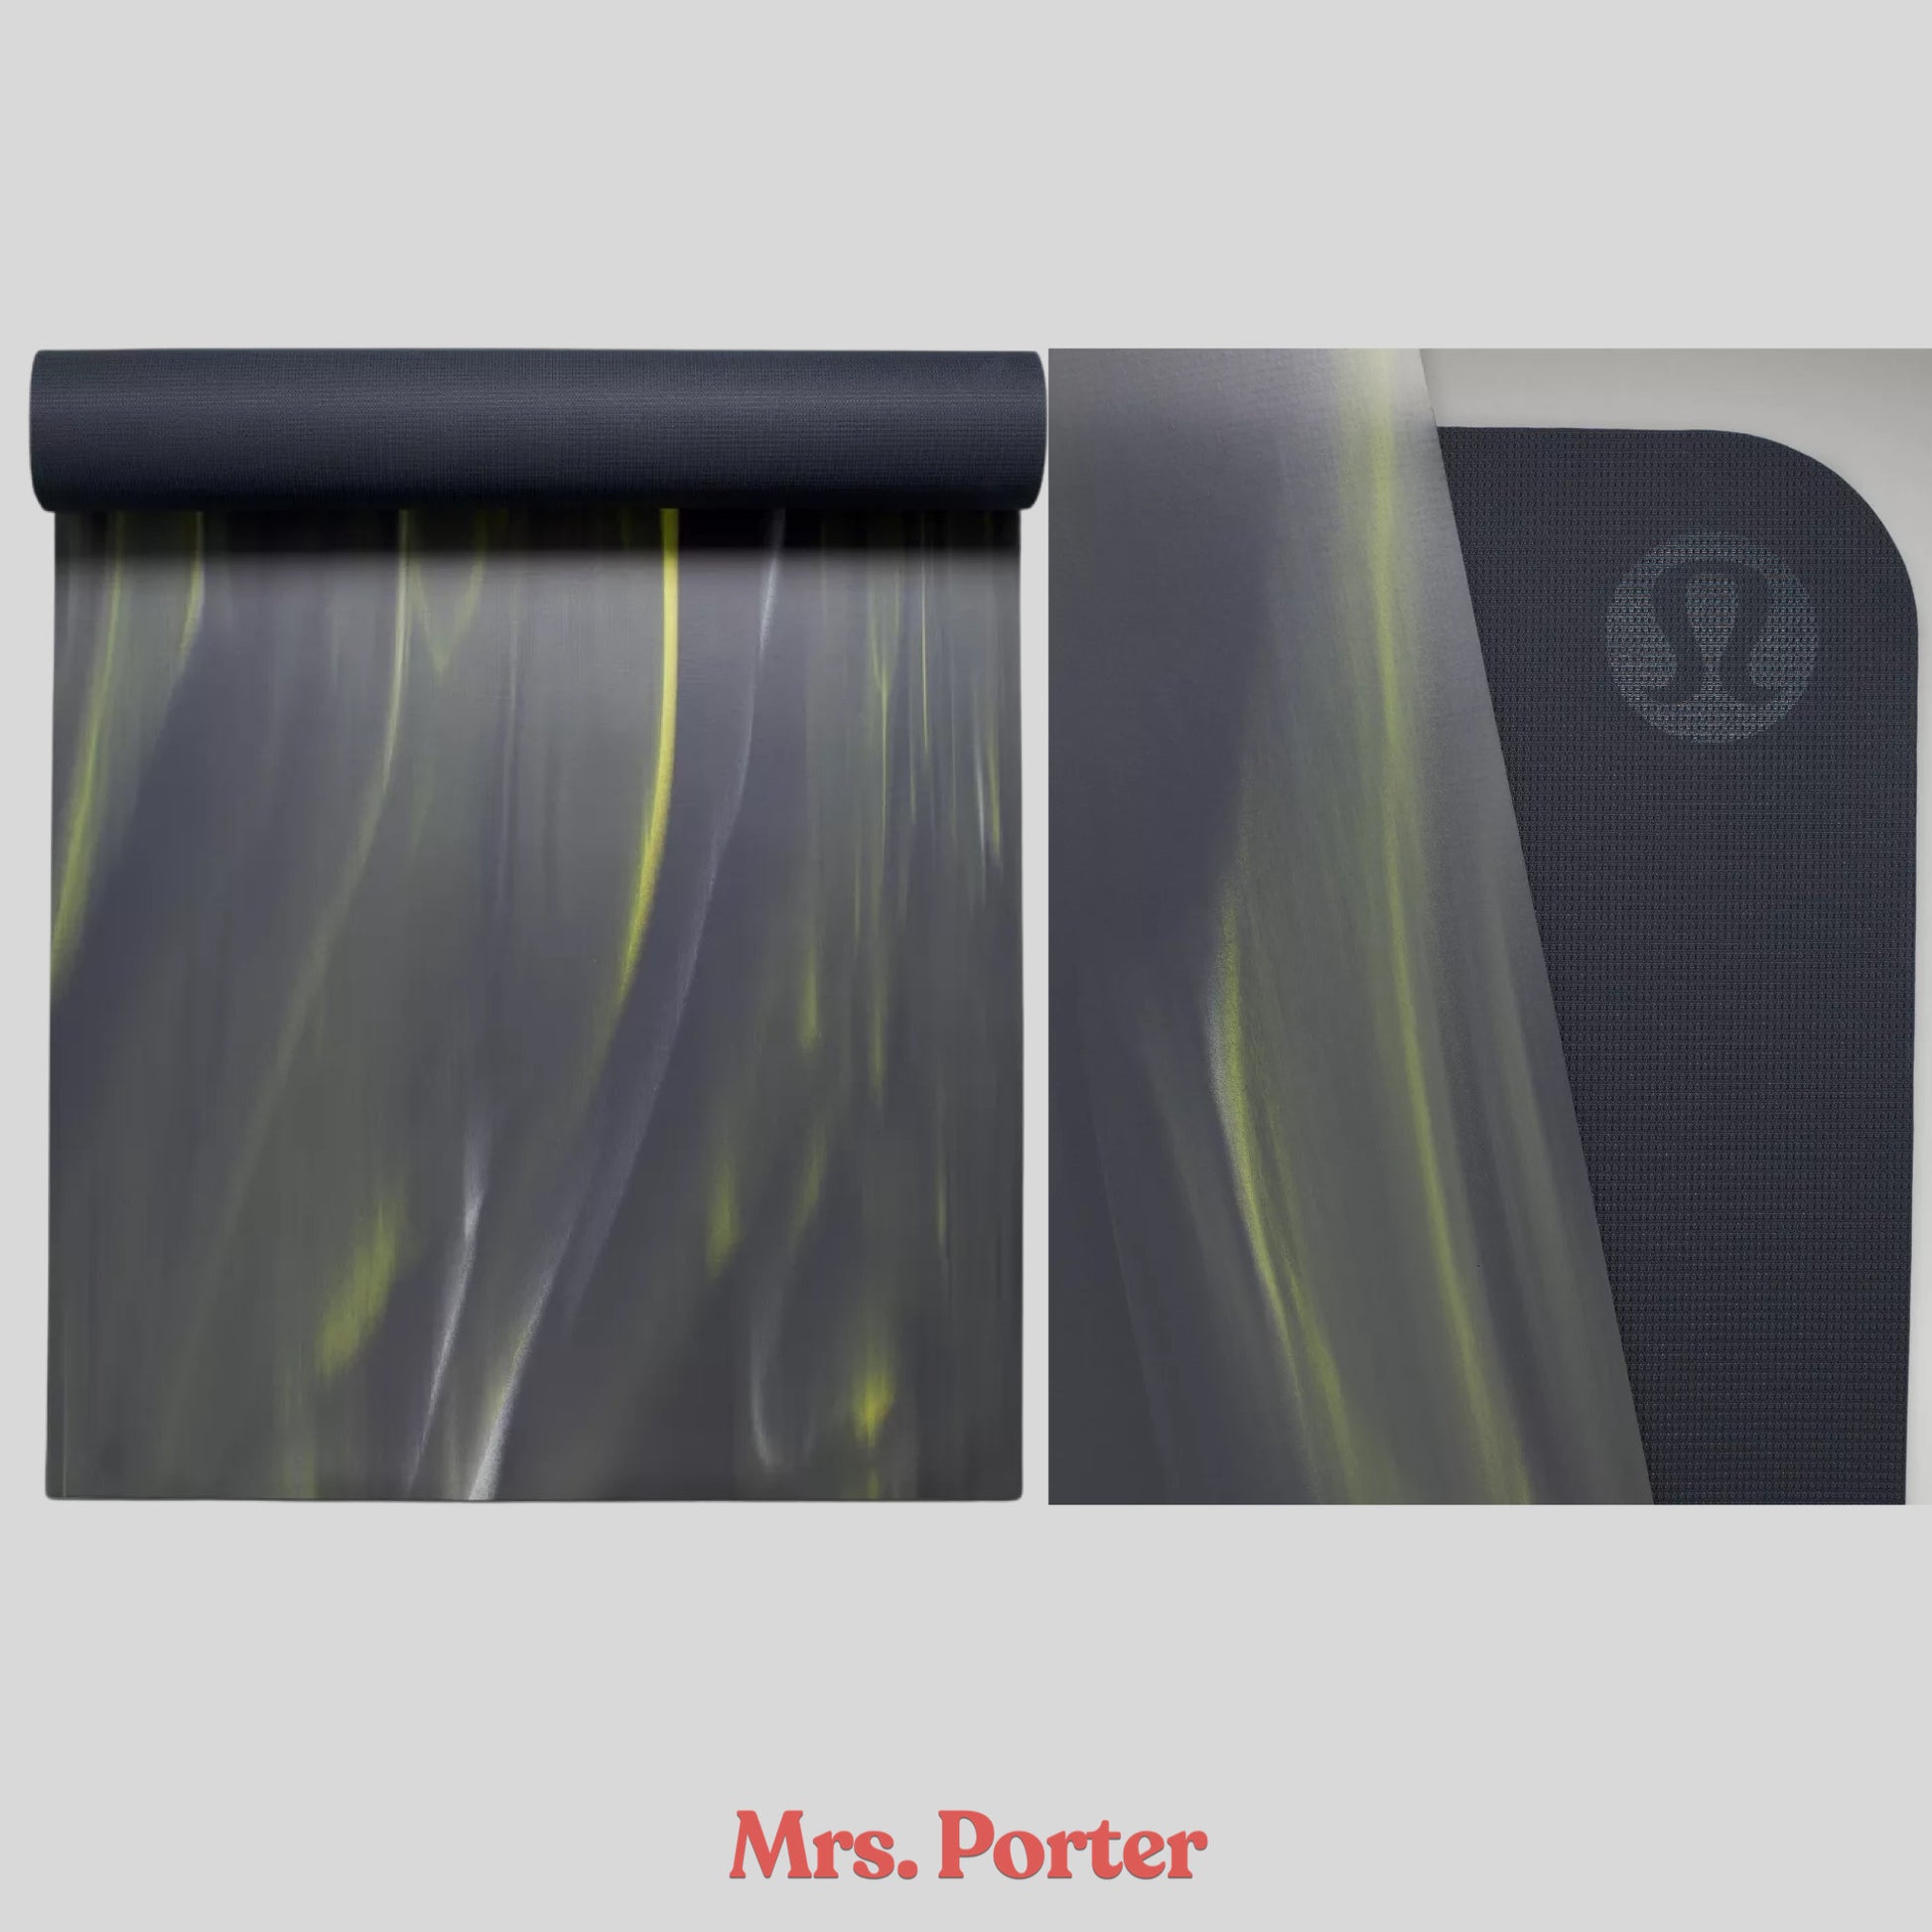 Lululemon Reversible Yoga Mat 5mm – Mrs. Porter